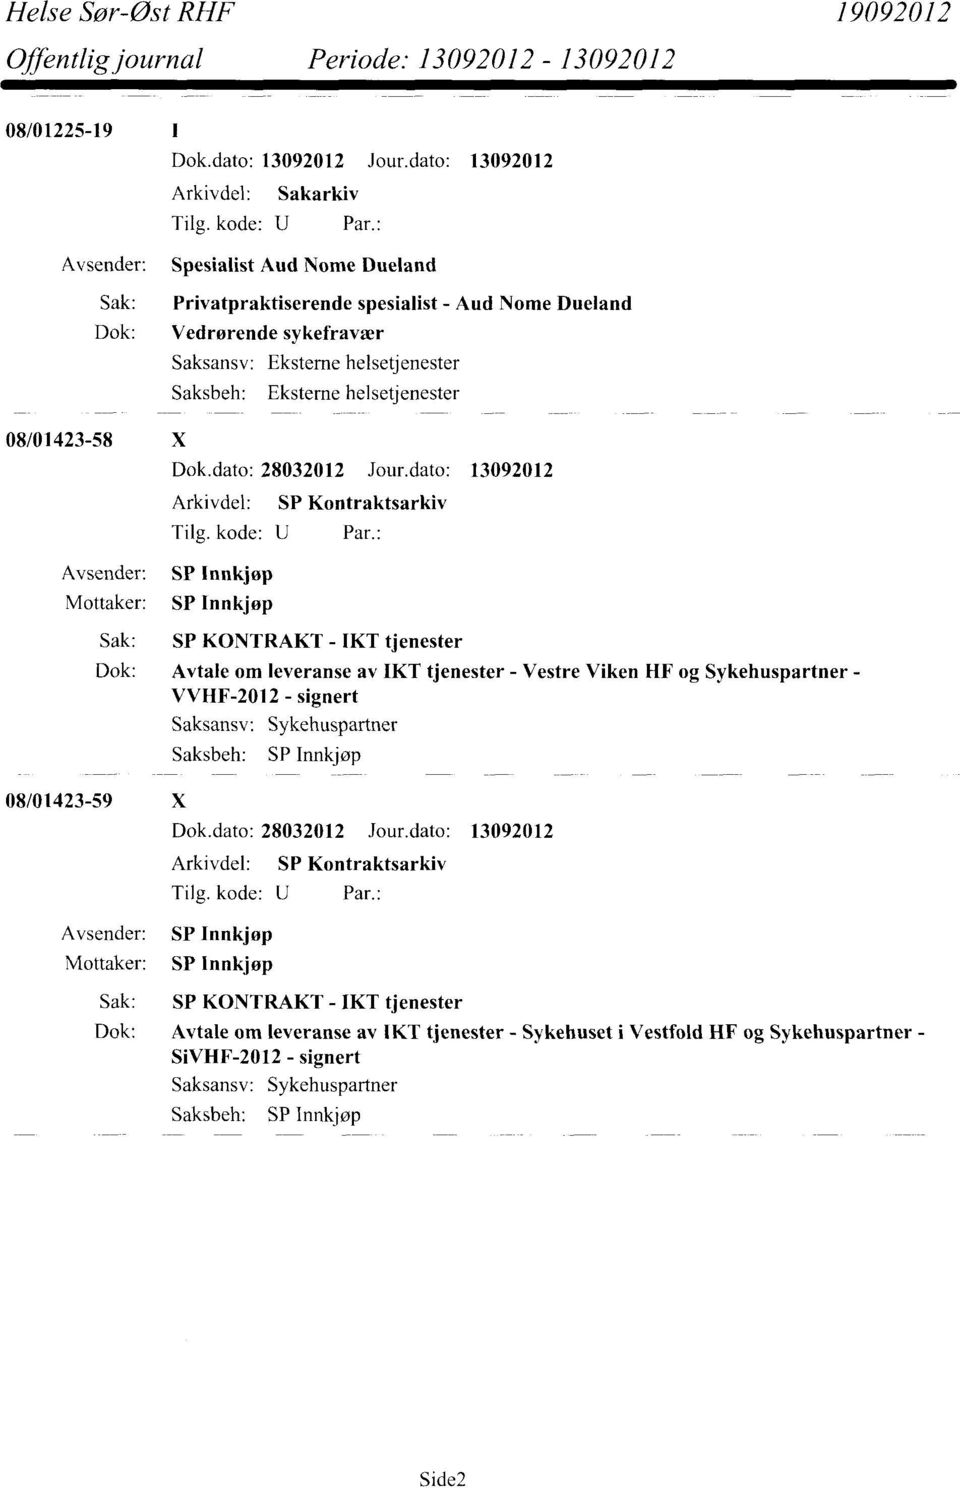 dato: 13092012 Arkivdel: SP Kontraktsarkiv Sak: SP KONTRAKT - IKT tjenester Dok: Avtale om leveranse av IKT tjenester - Vestre Viken HF og Sykehuspartner - VVHF-2012